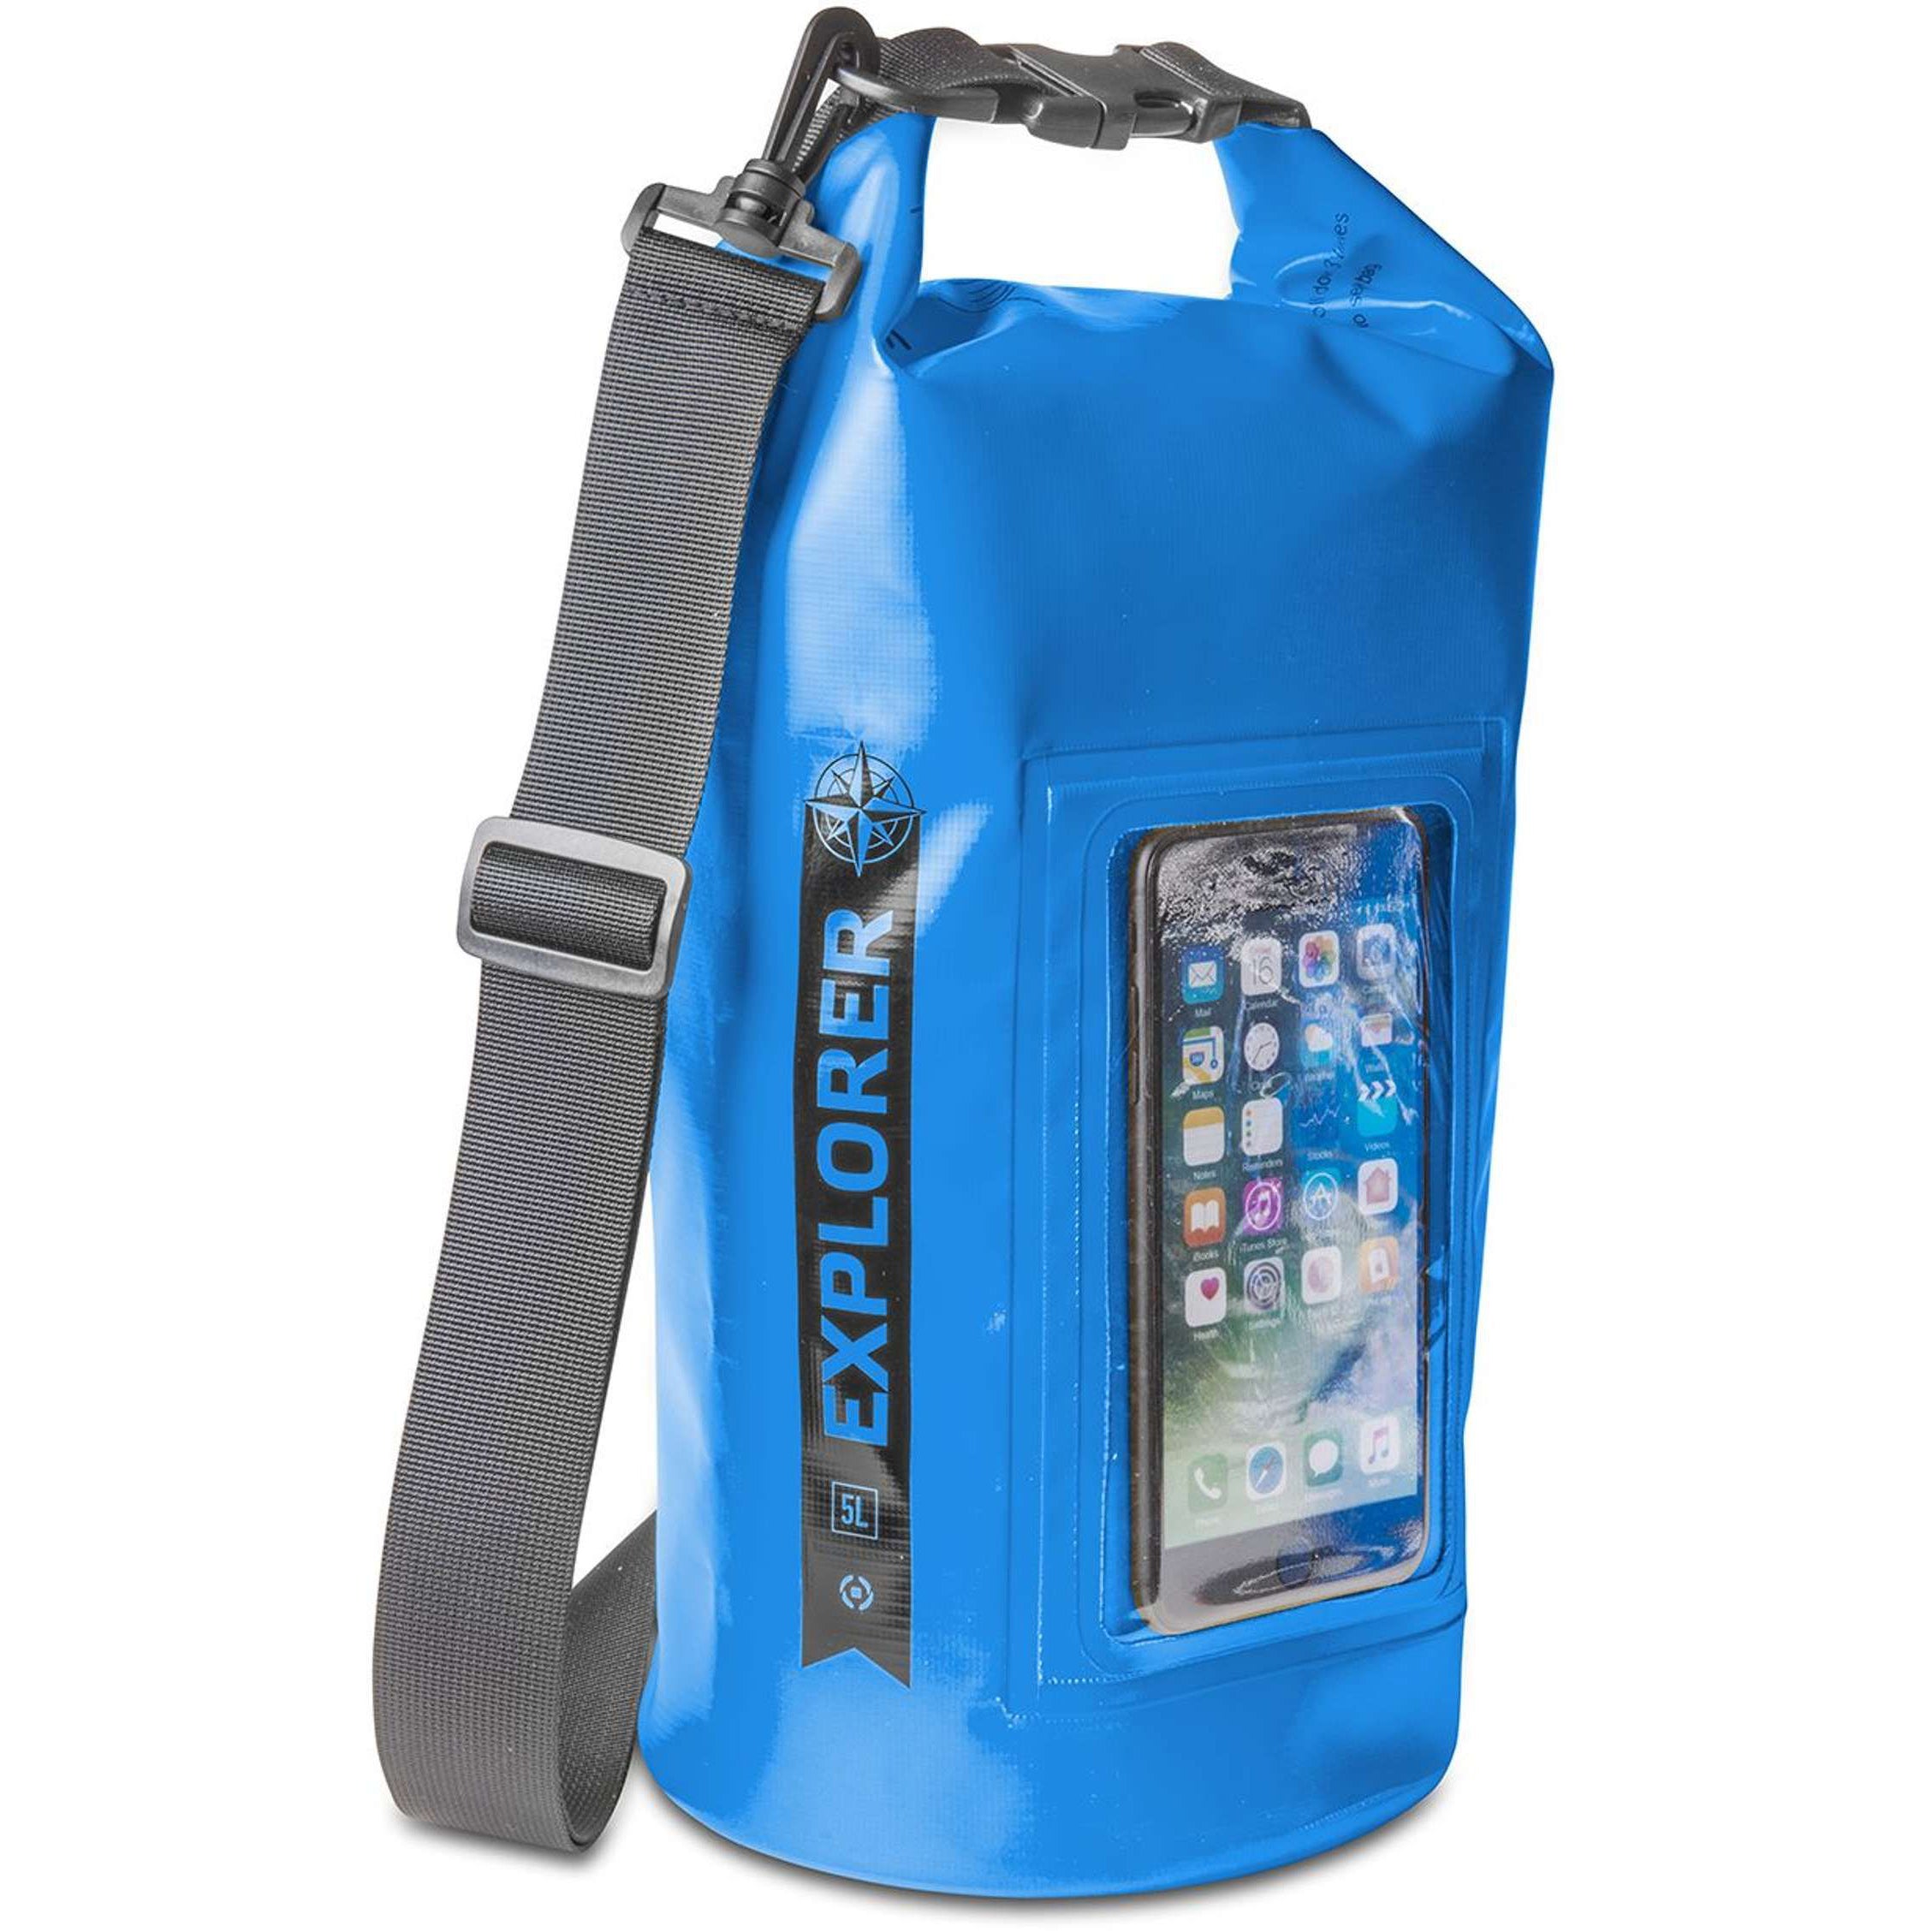 Rugzak Explorer 5 liter van Celly blauw zijaanzicht met smartphone in de houder